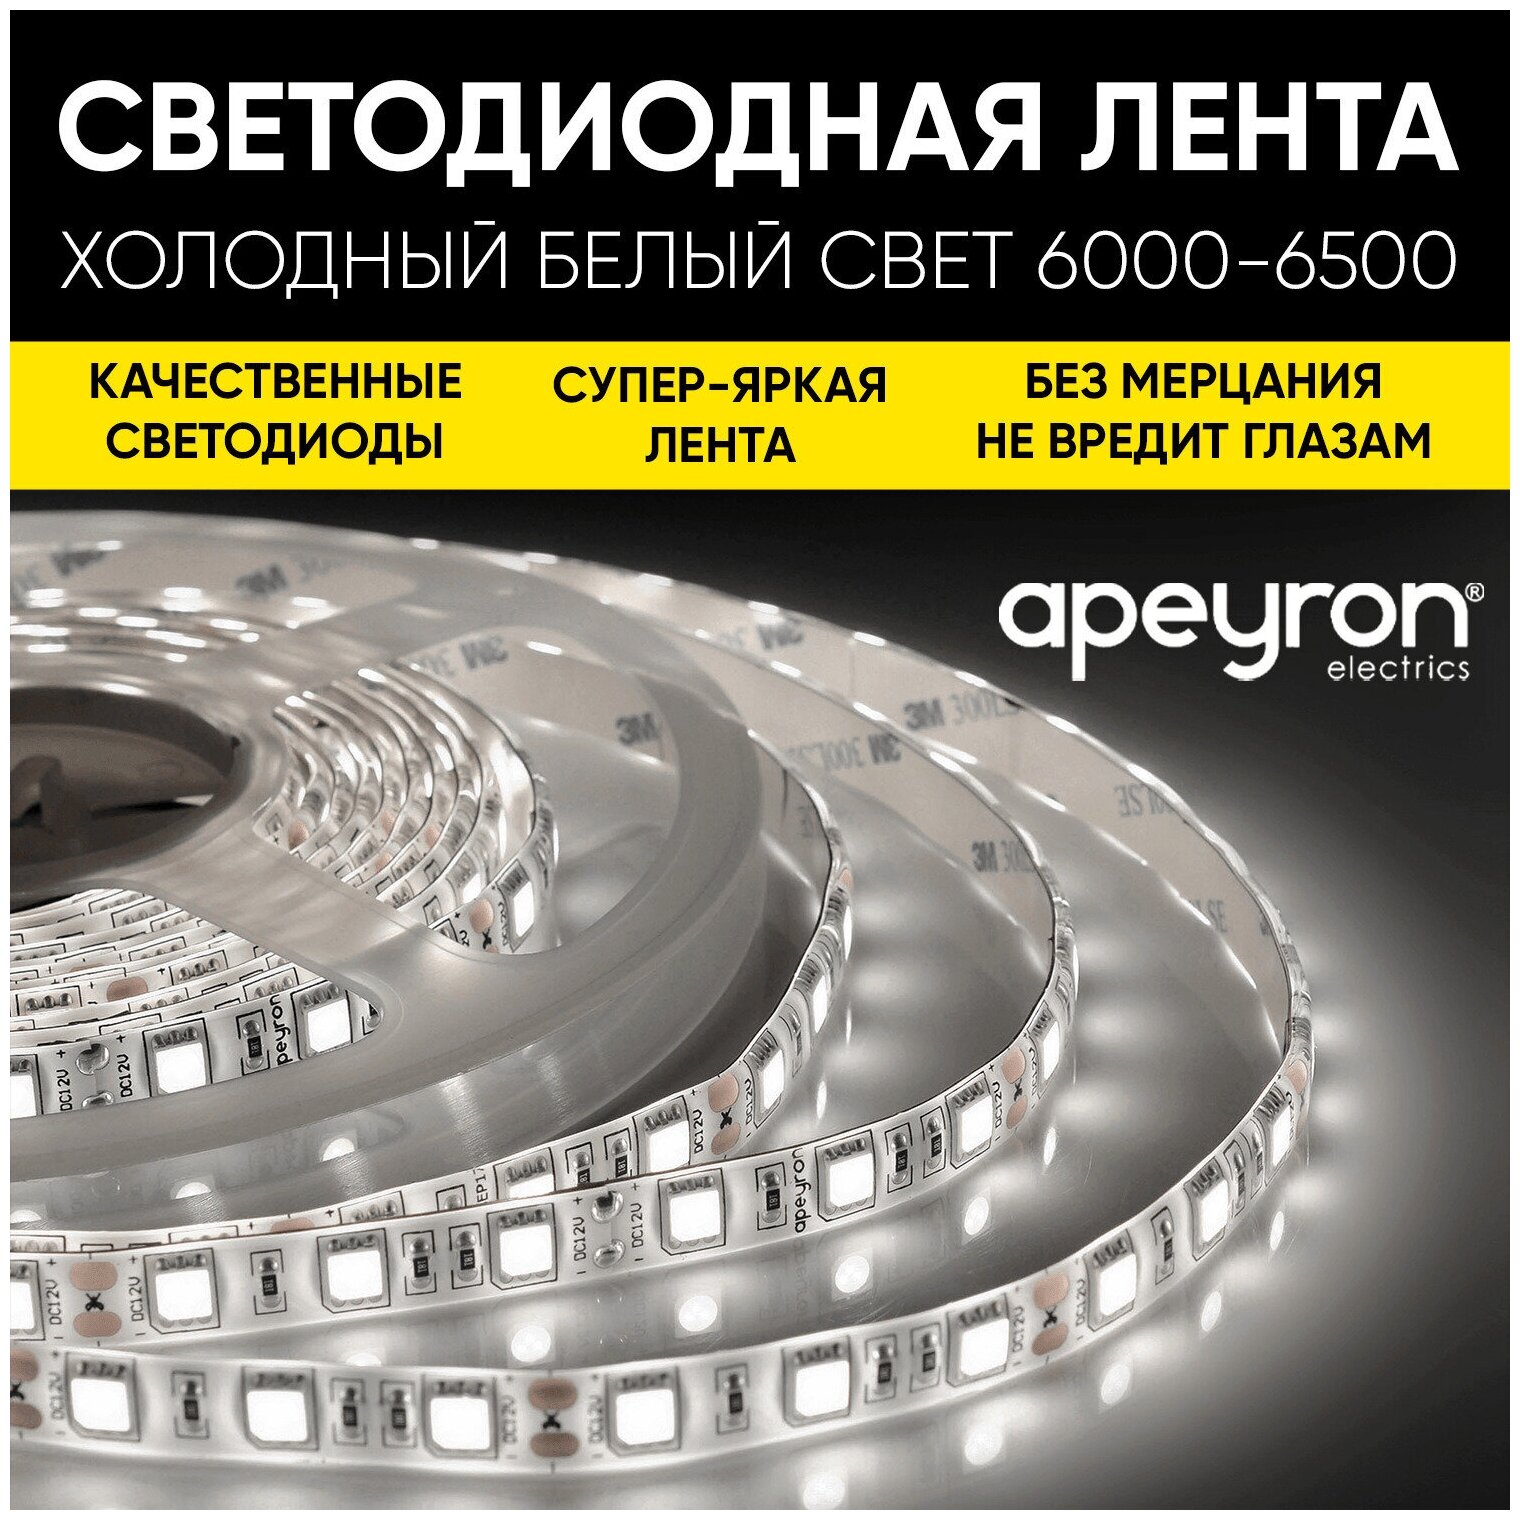 Комплект светодиодной ленты Apeyron SL-55 с напряжением 220В обладает холодным белым цветом свечения 6500К / 600Лм/м / 60д/м / 6Вт/м / smd2835 / IP65 / 5 метров